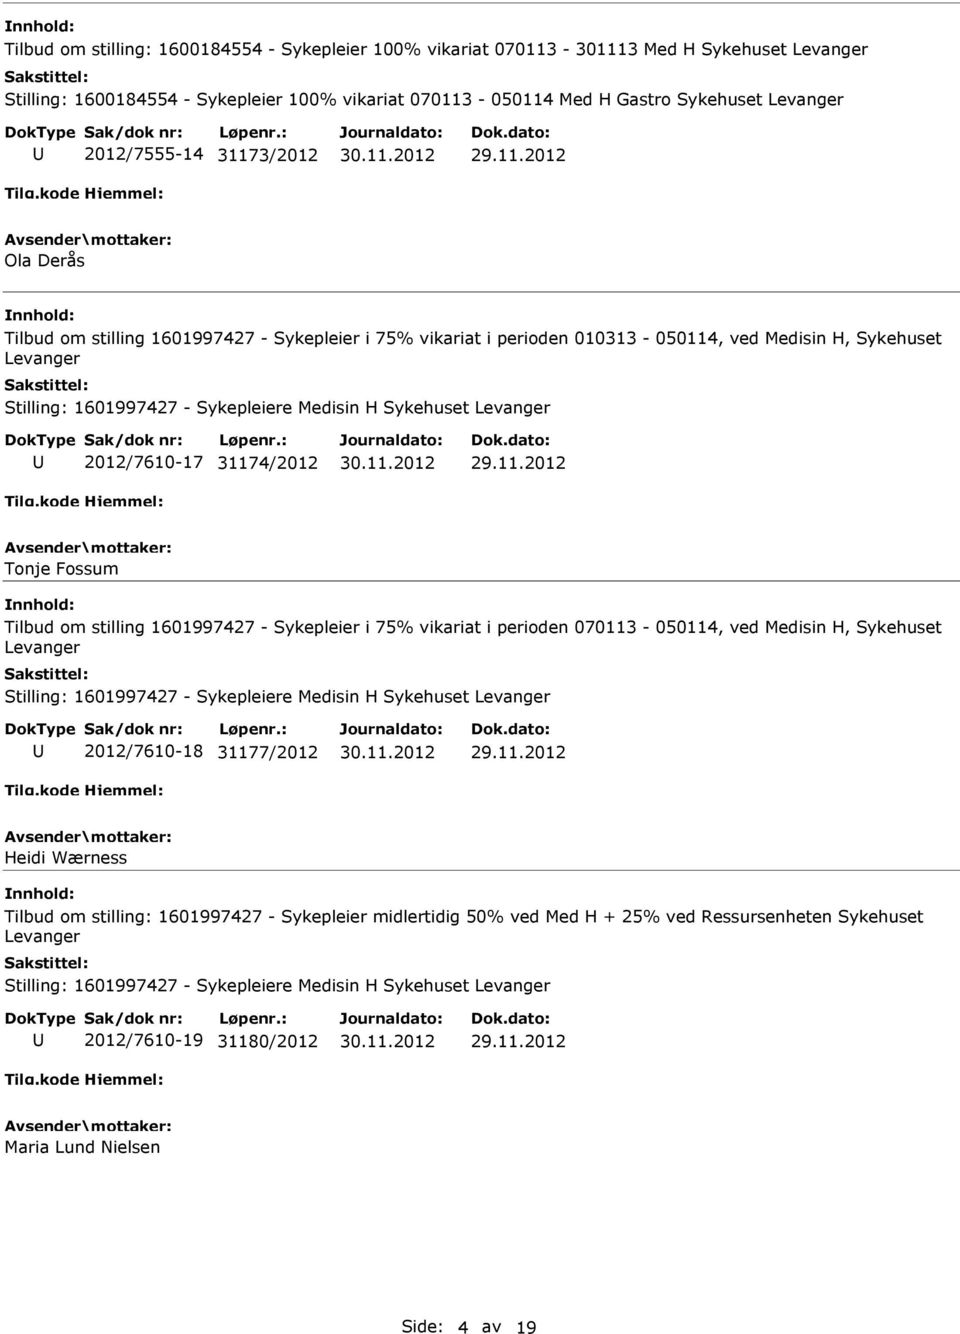 Sykehuset Levanger 2012/7610-17 31174/2012 Tonje Fossum Tilbud om stilling 1601997427 - Sykepleier i 75% vikariat i perioden 070113-050114, ved Medisin H, Sykehuset Levanger Stilling: 1601997427 -